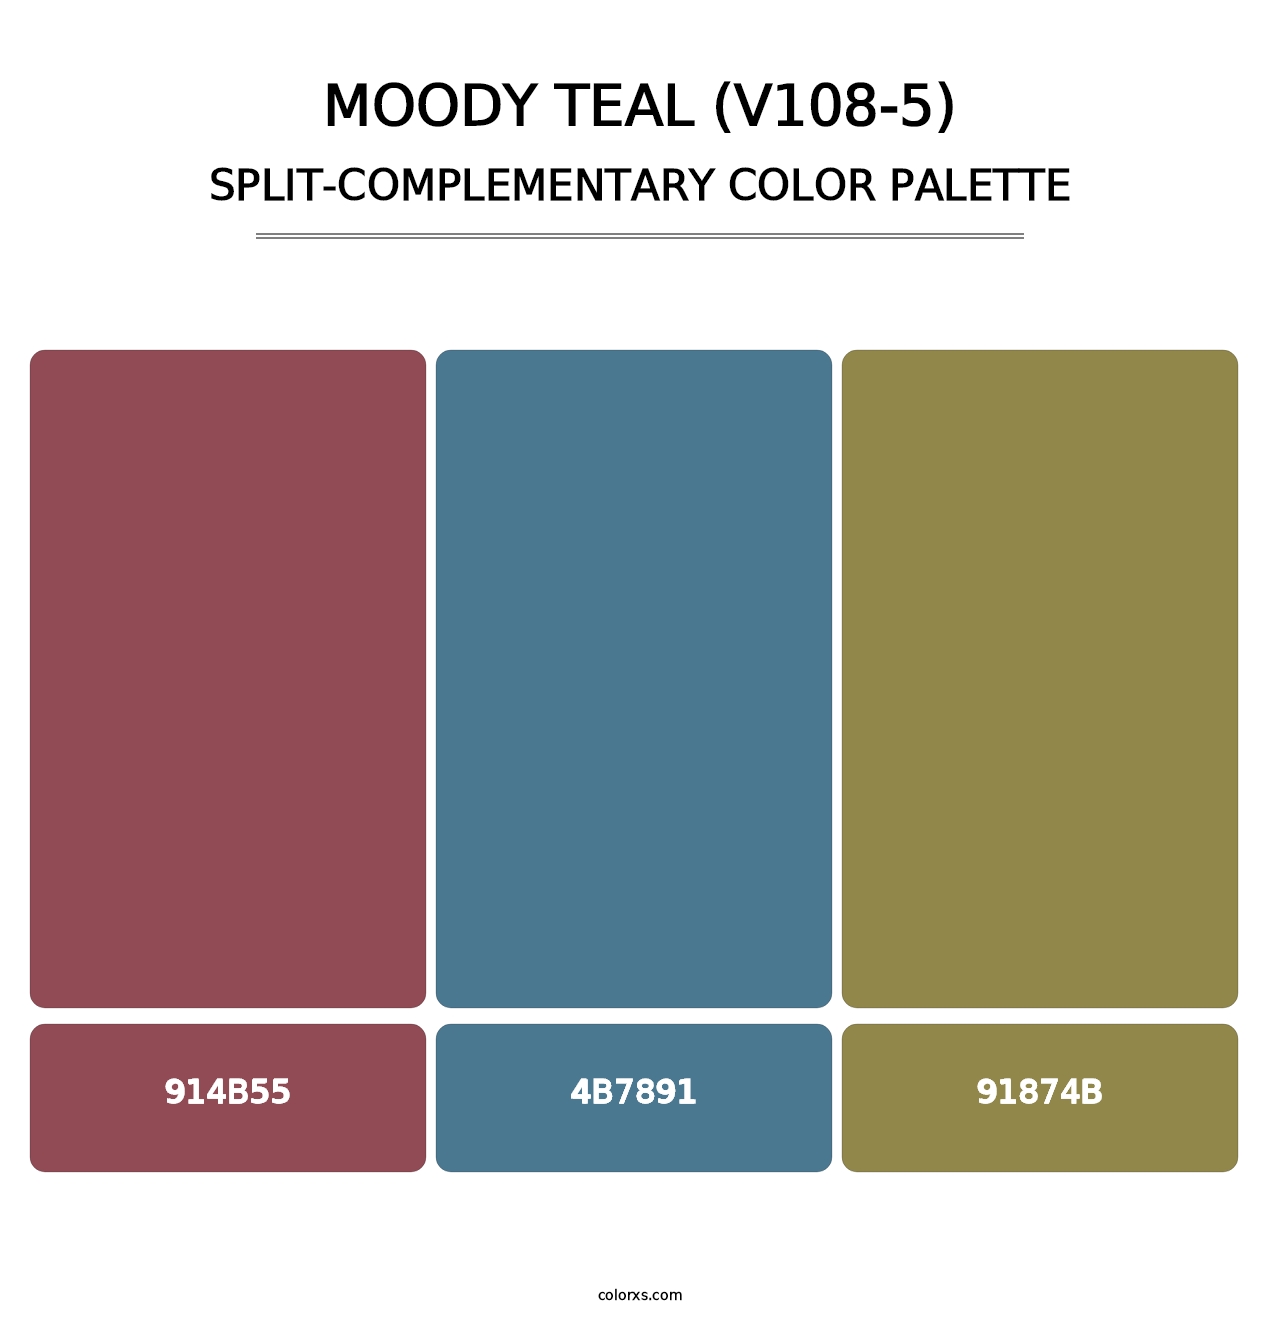 Moody Teal (V108-5) - Split-Complementary Color Palette